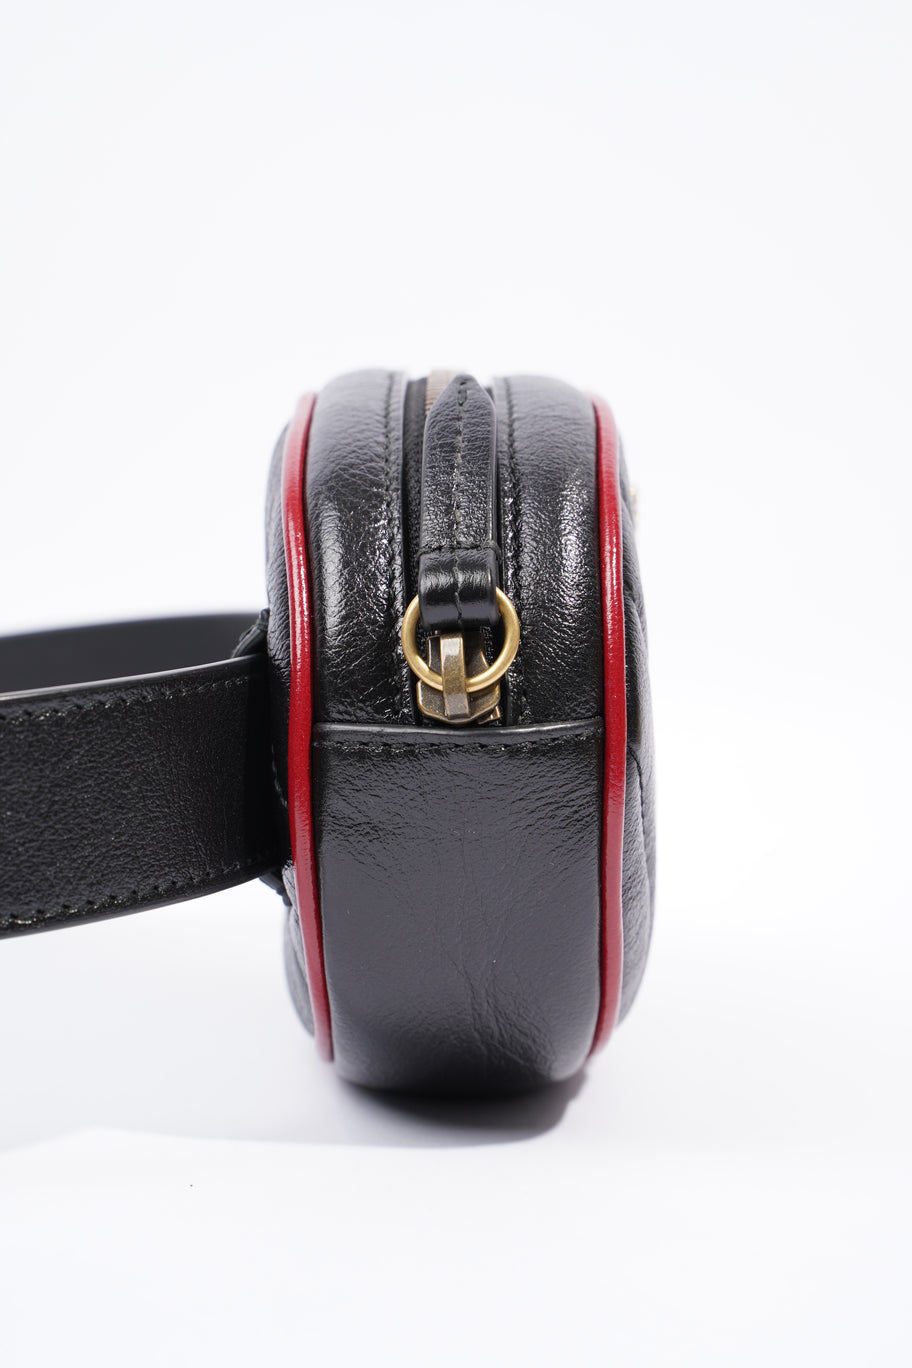 Marmont Belt Bag Black / Red Leather 75cm 30